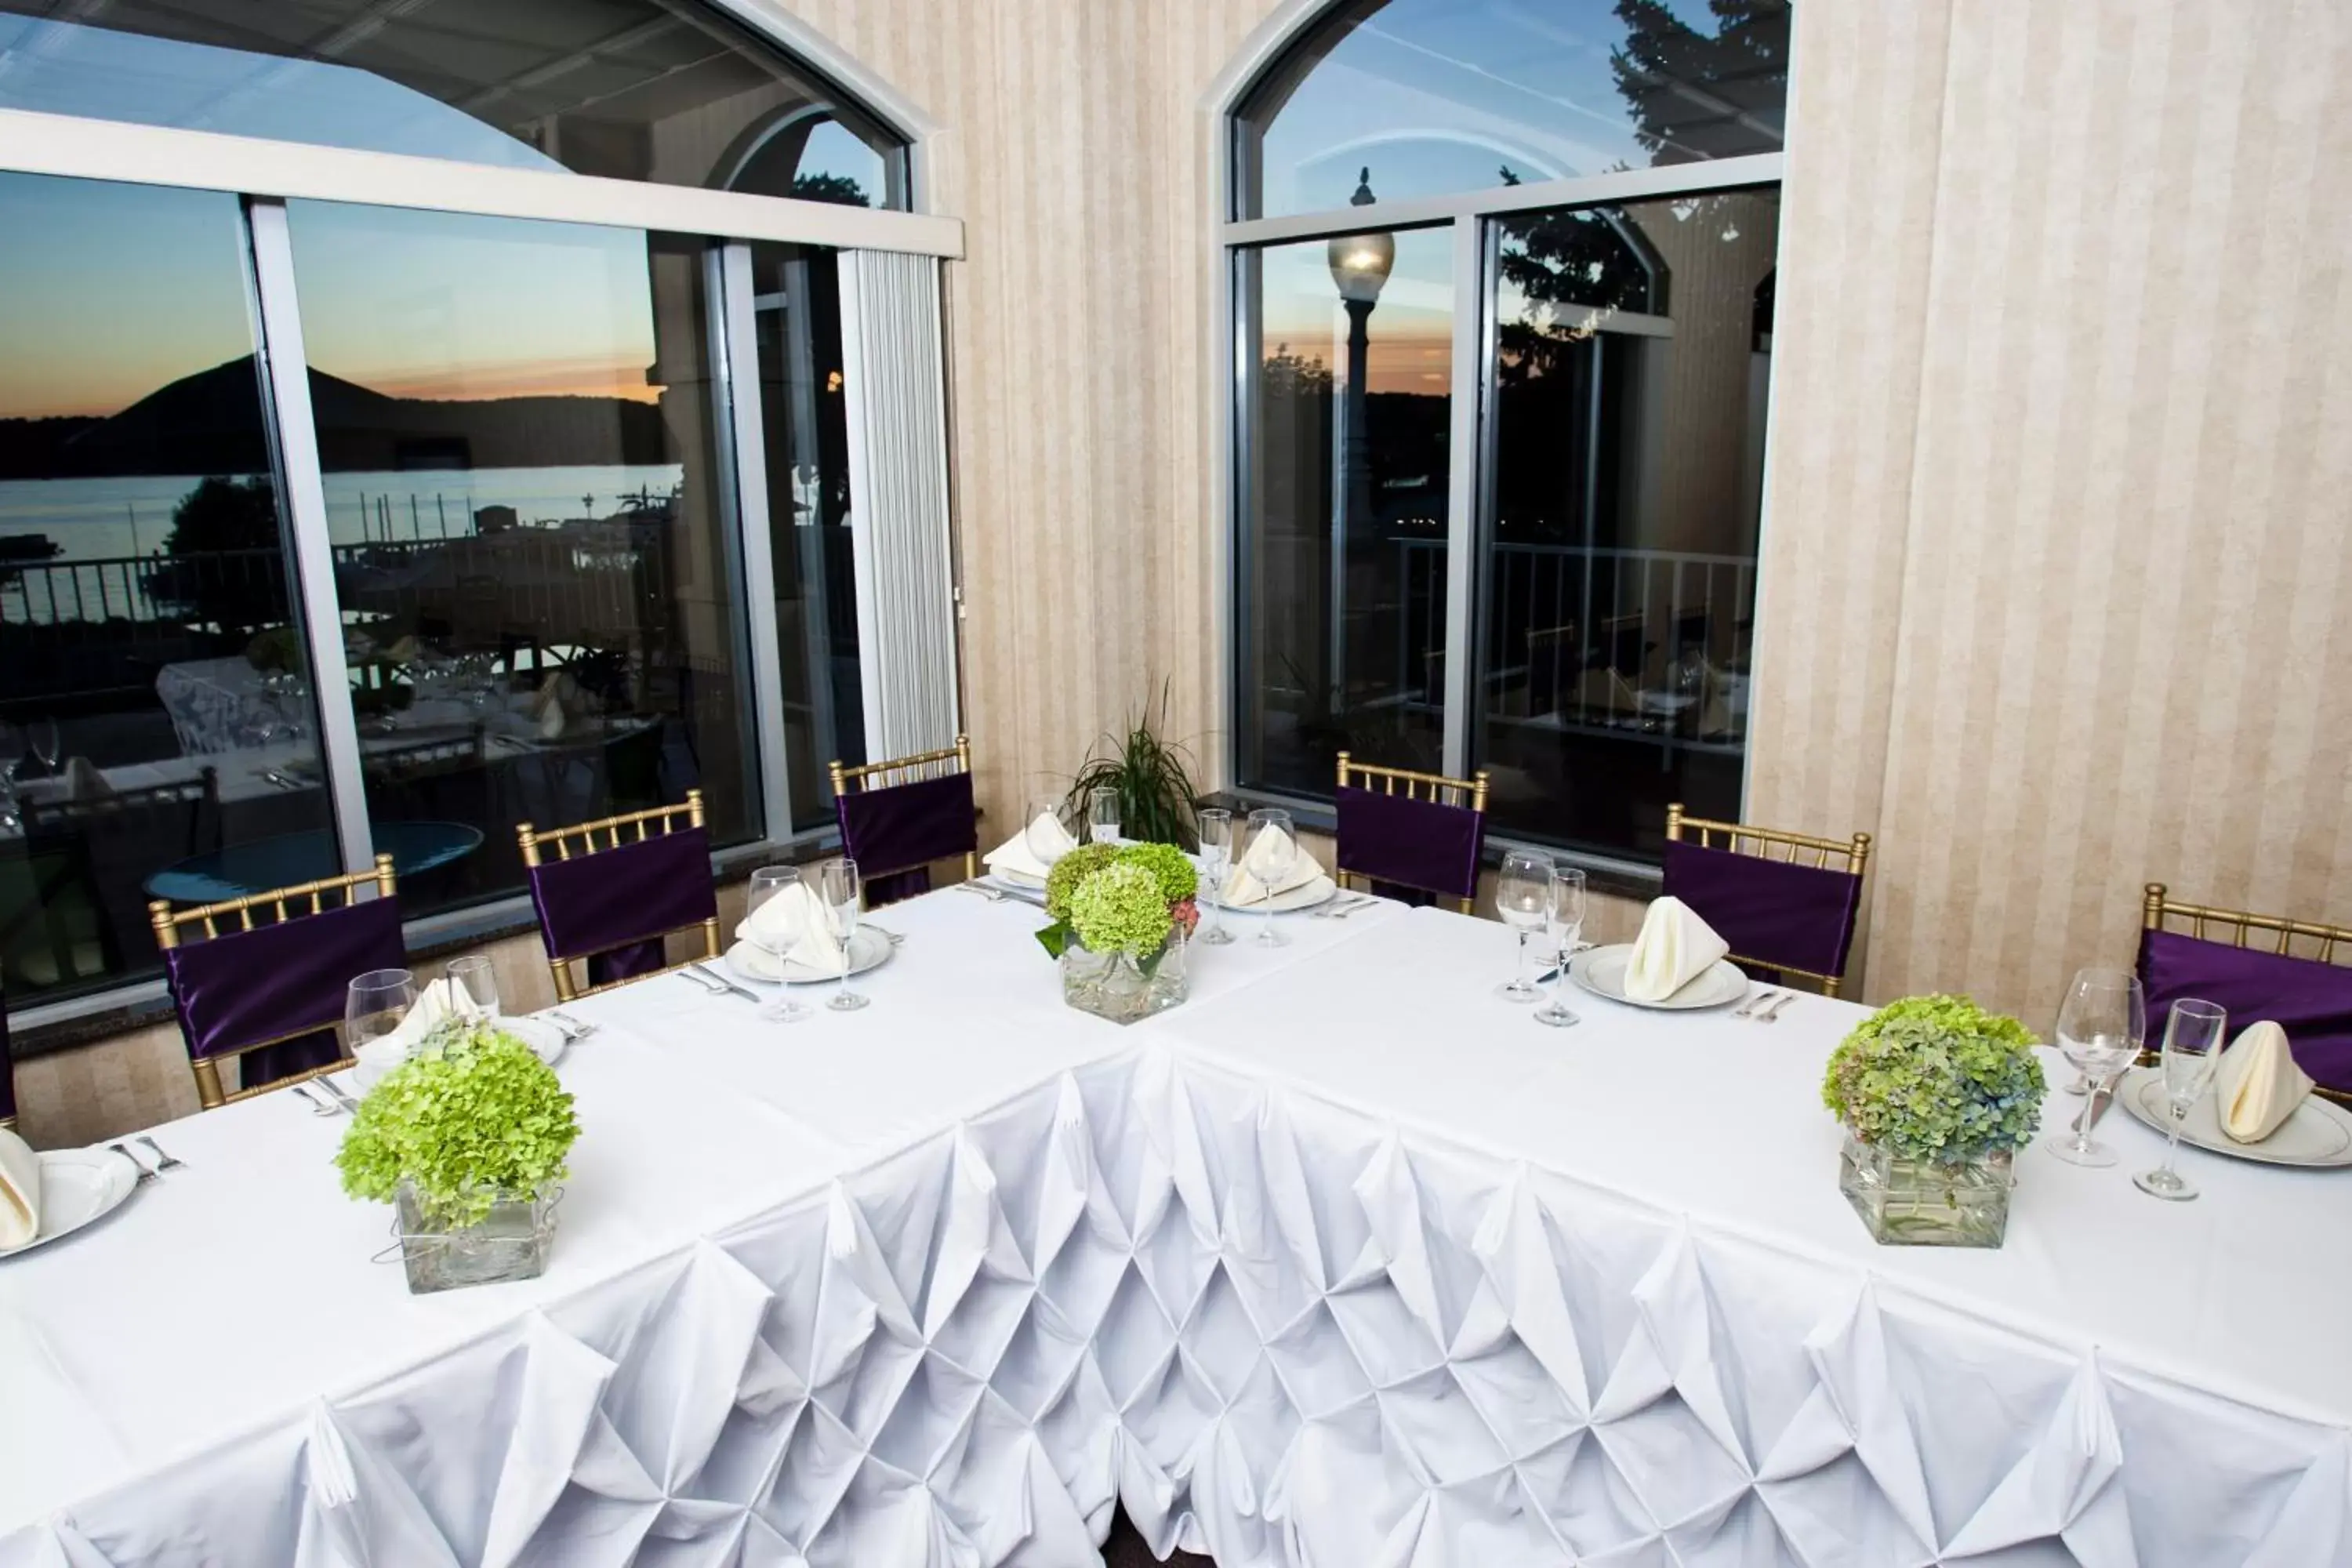 Banquet/Function facilities, Banquet Facilities in Bella Vista Suites Lake Geneva